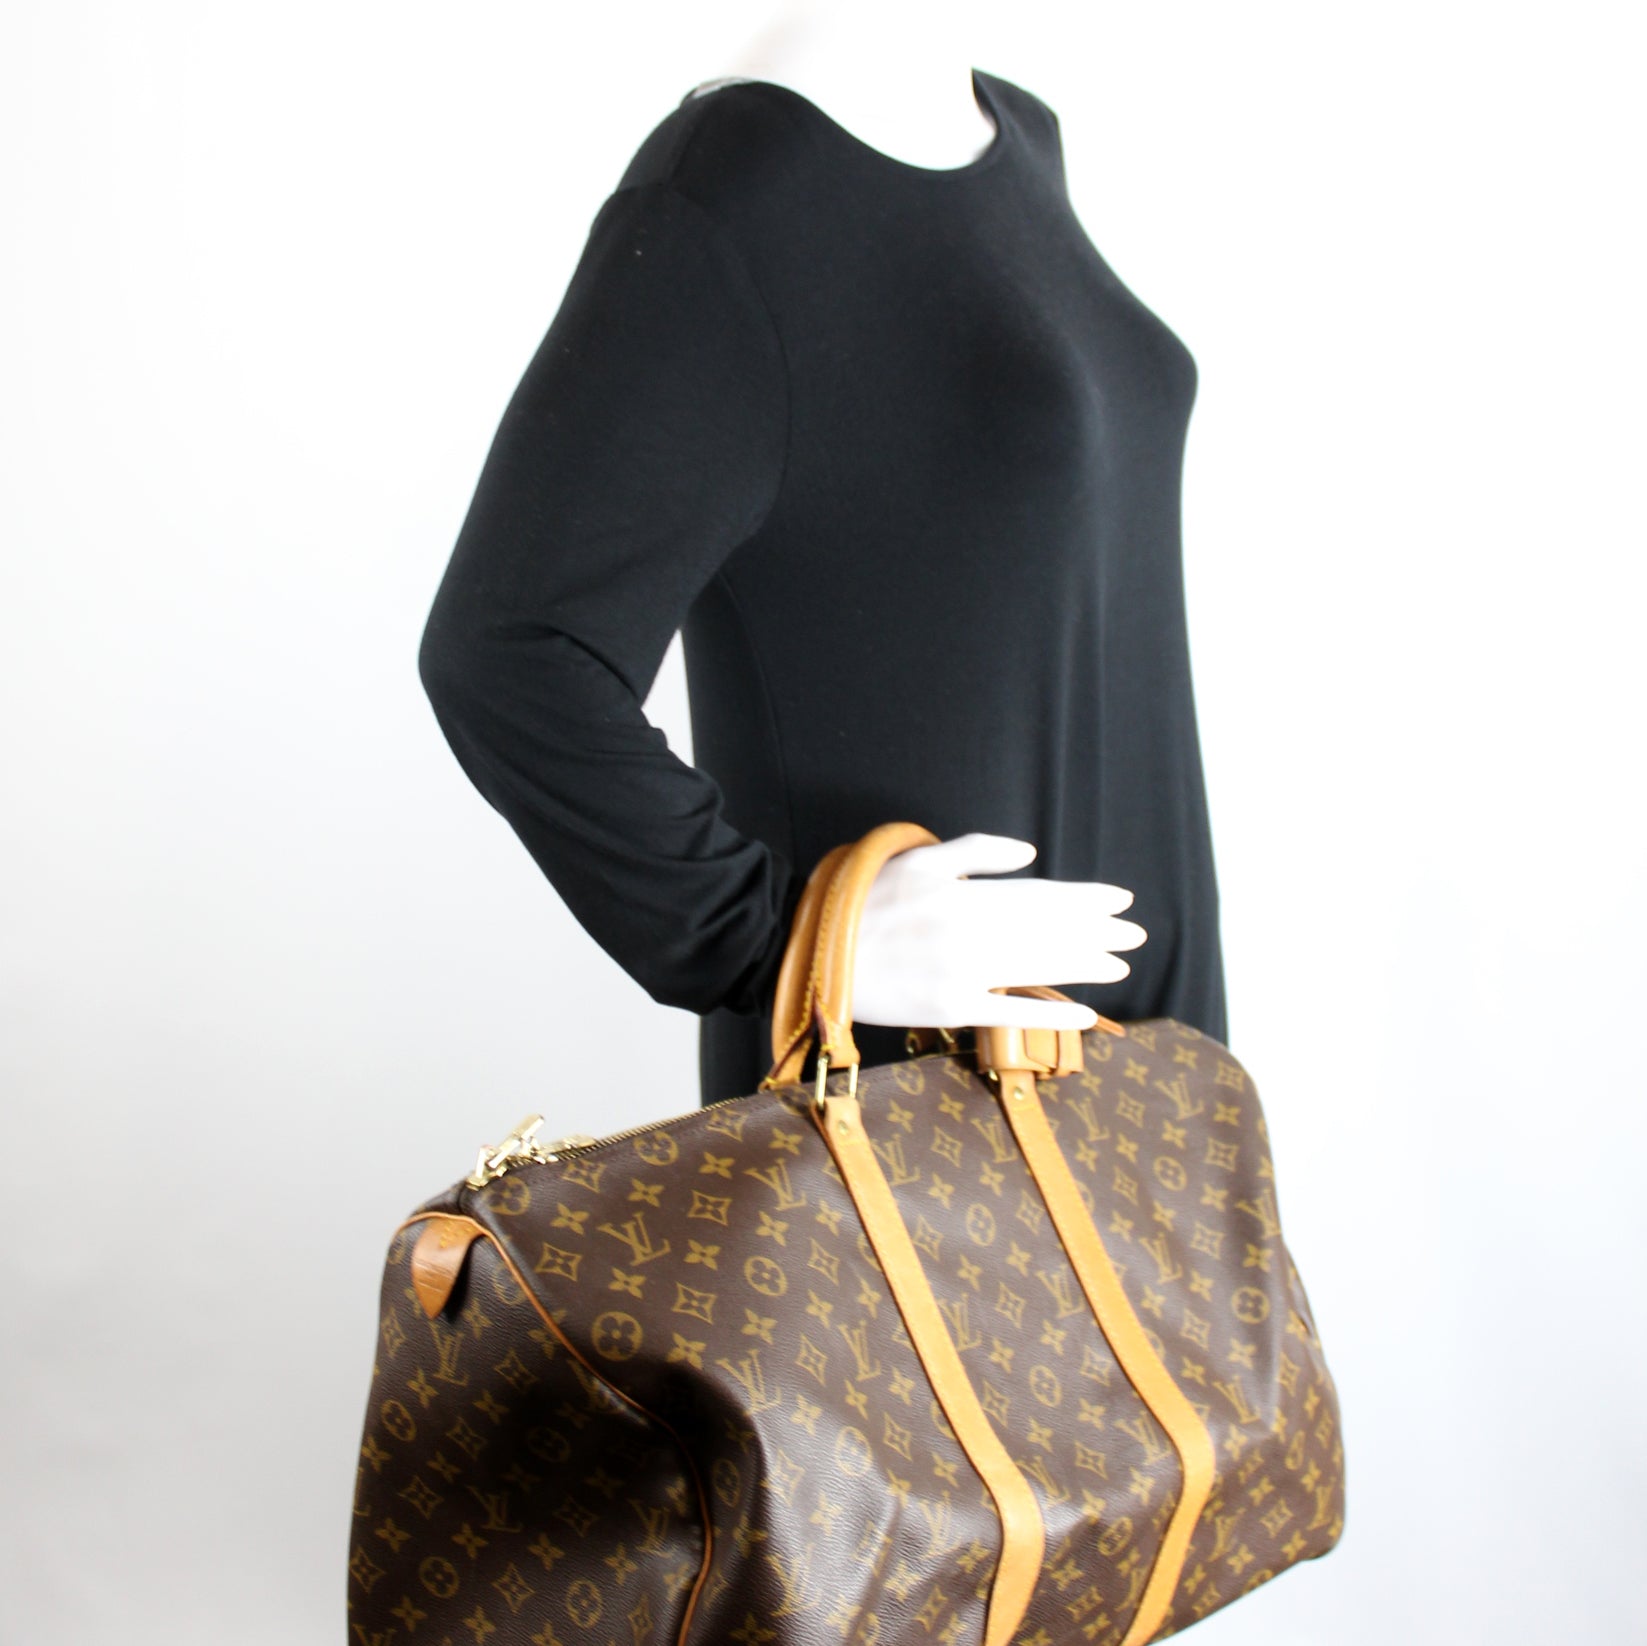 Keepall 50 Monogram – Keeks Designer Handbags